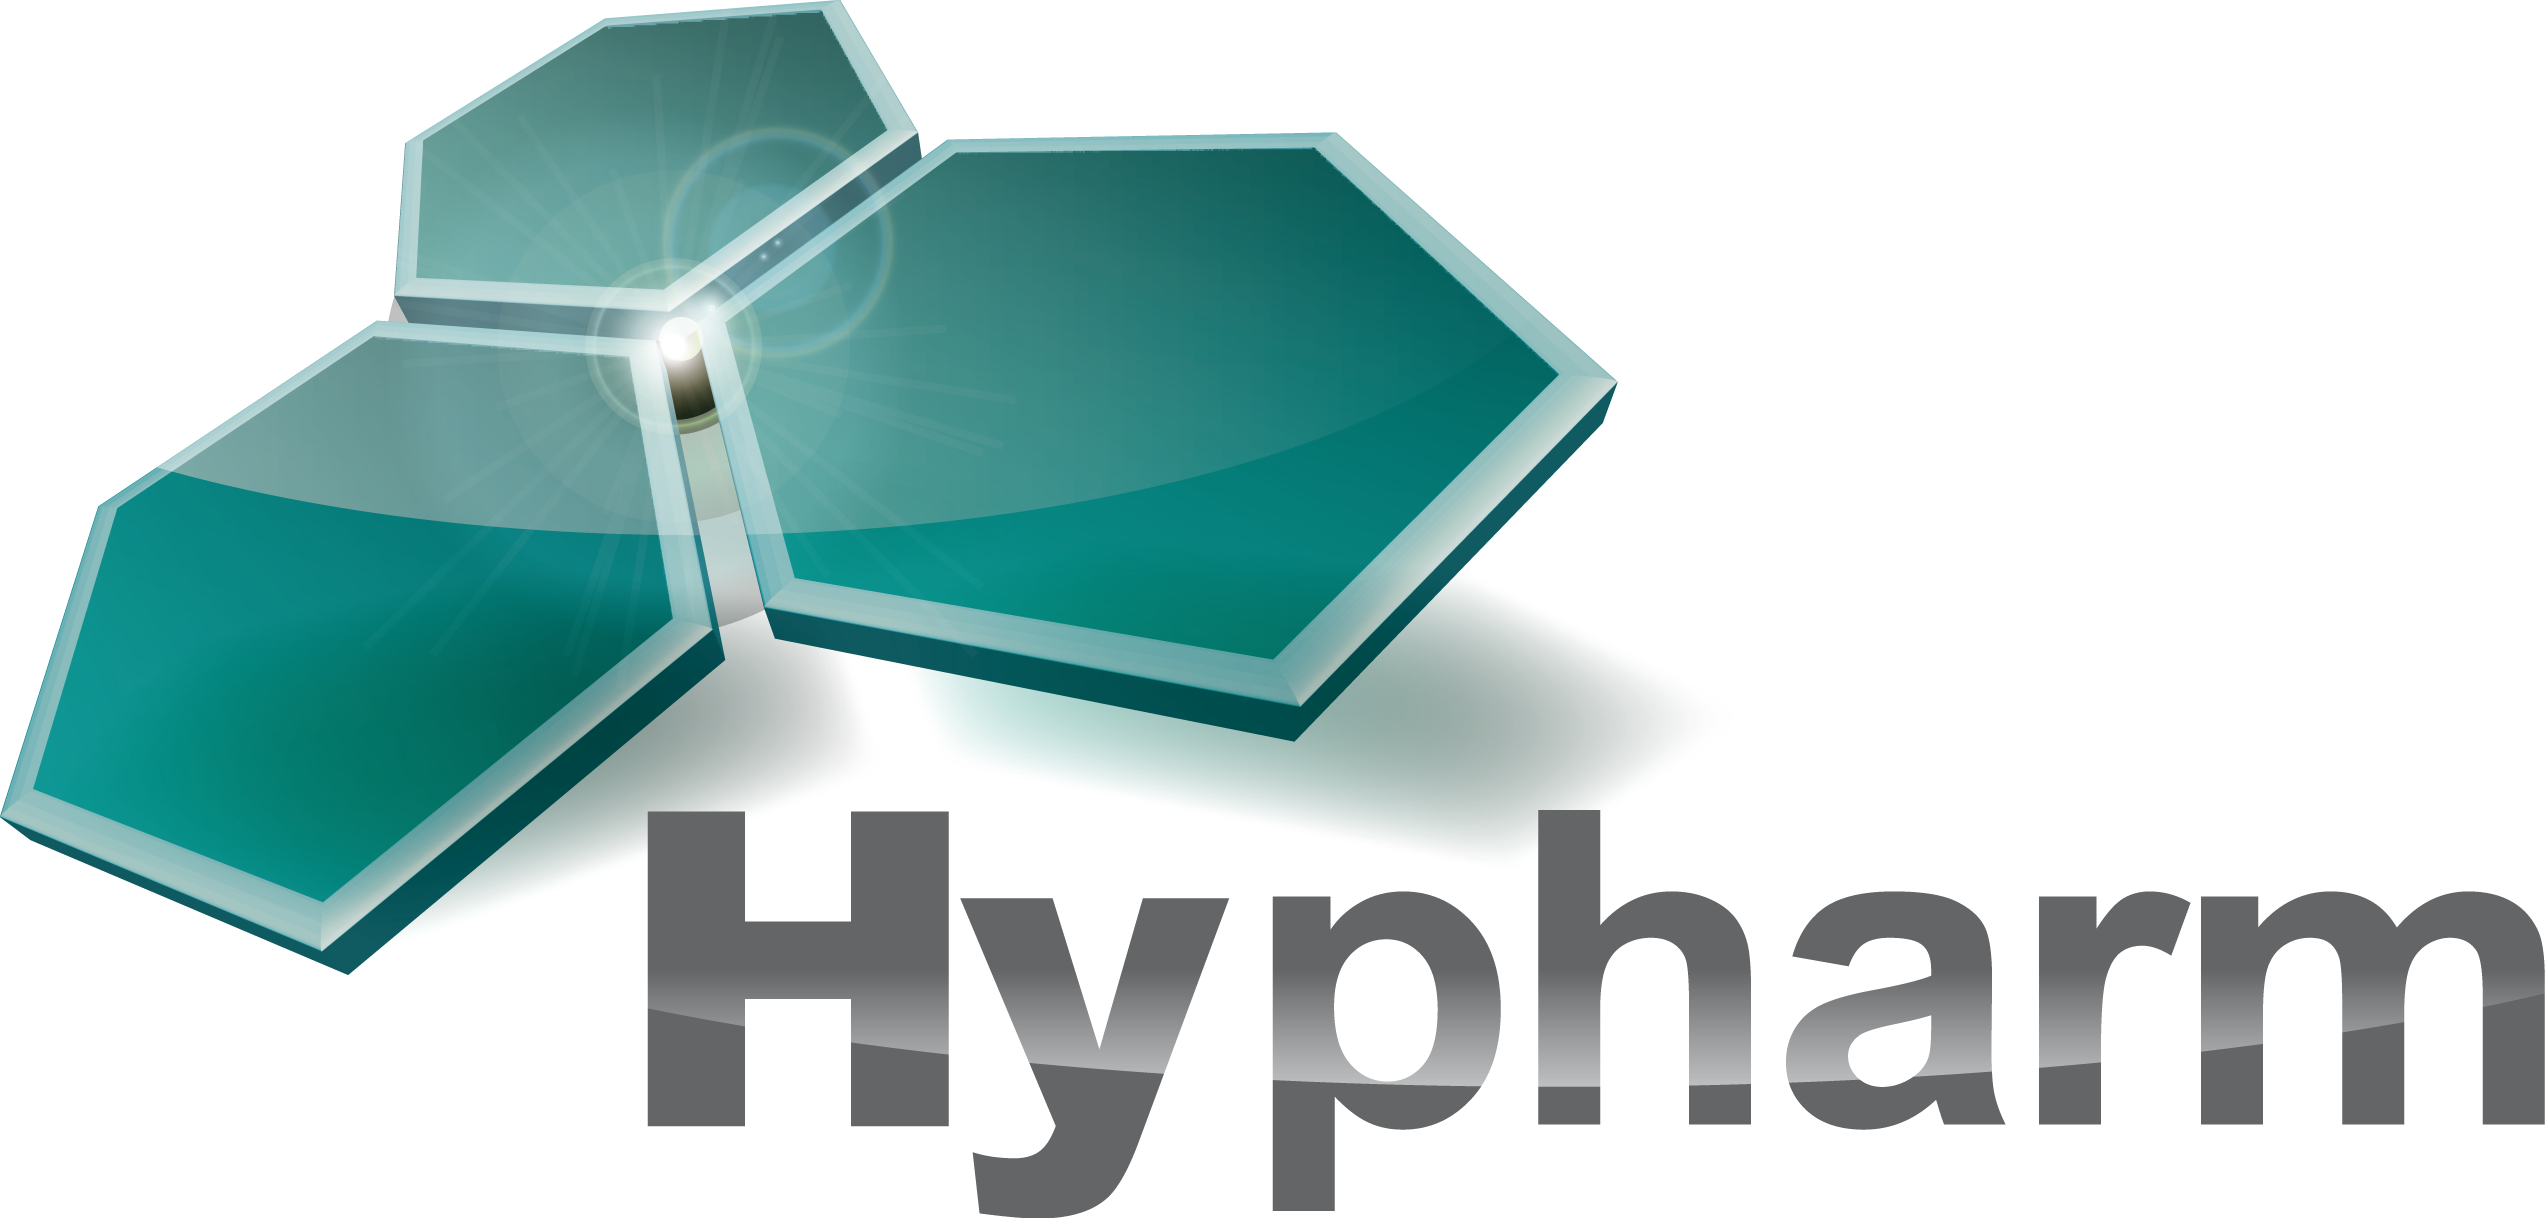 Hypharm